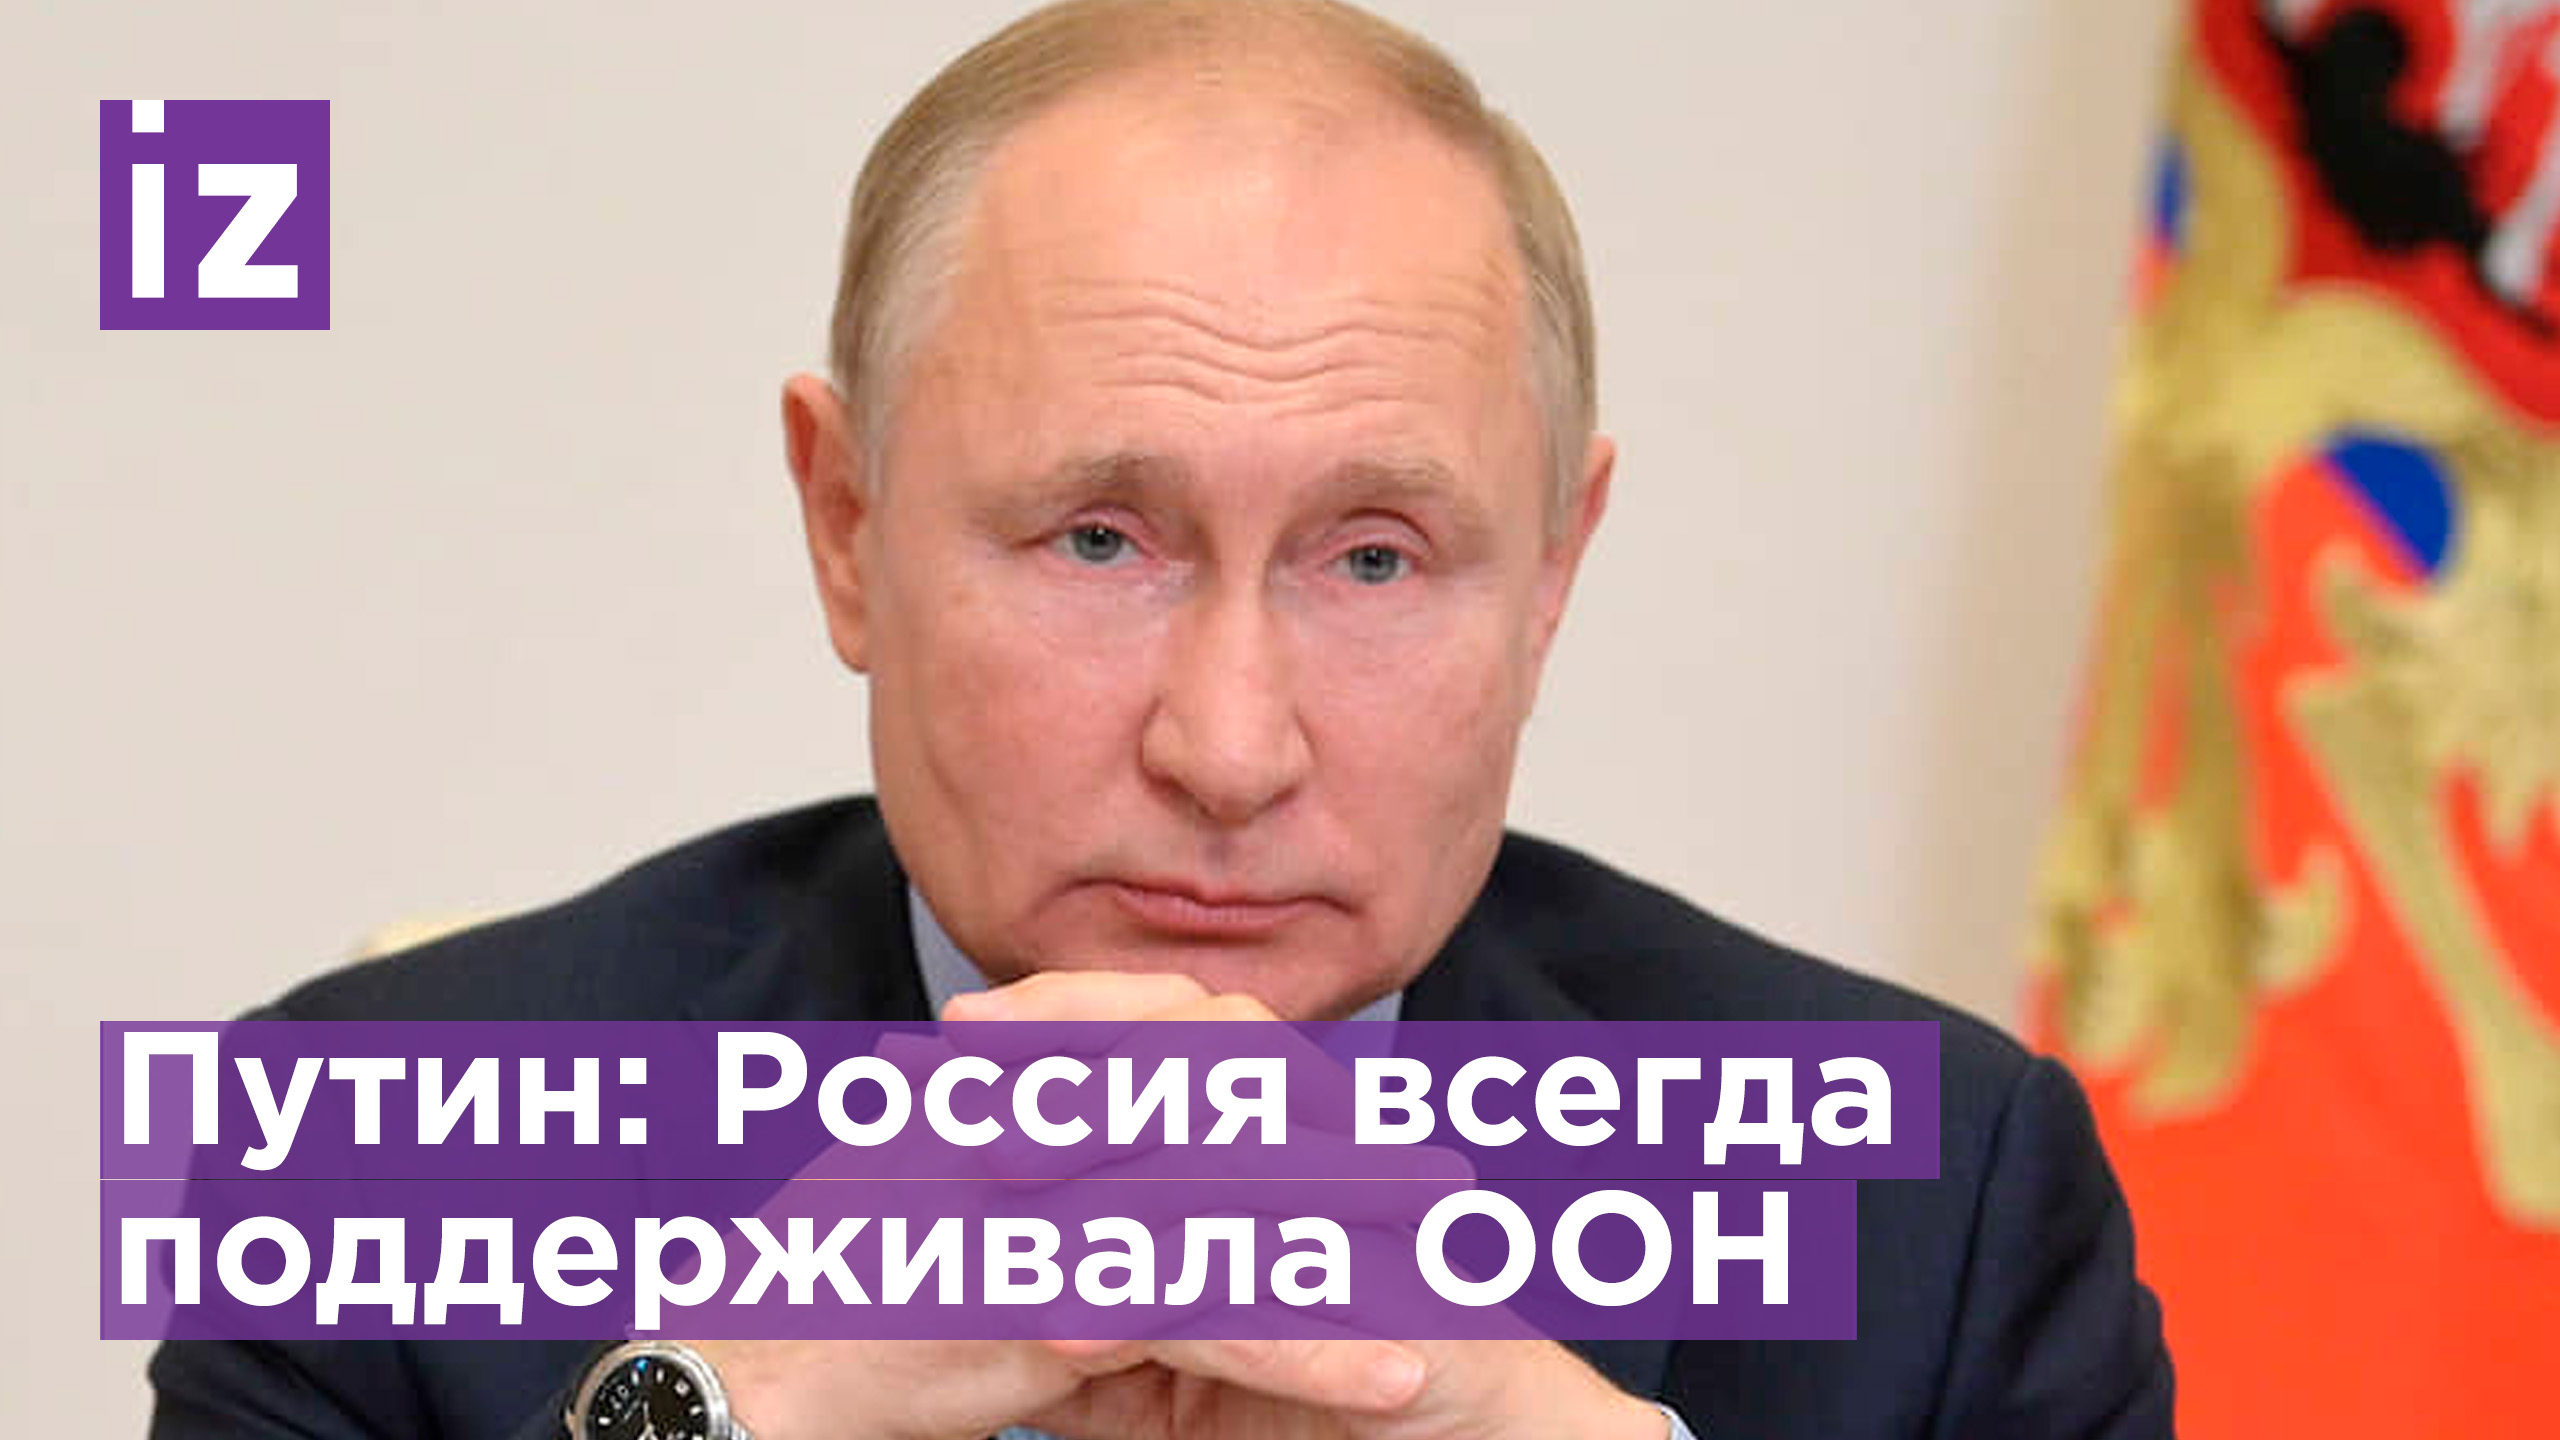 Путин: Россия всегда поддерживала и будет поддерживать ООН / Известия